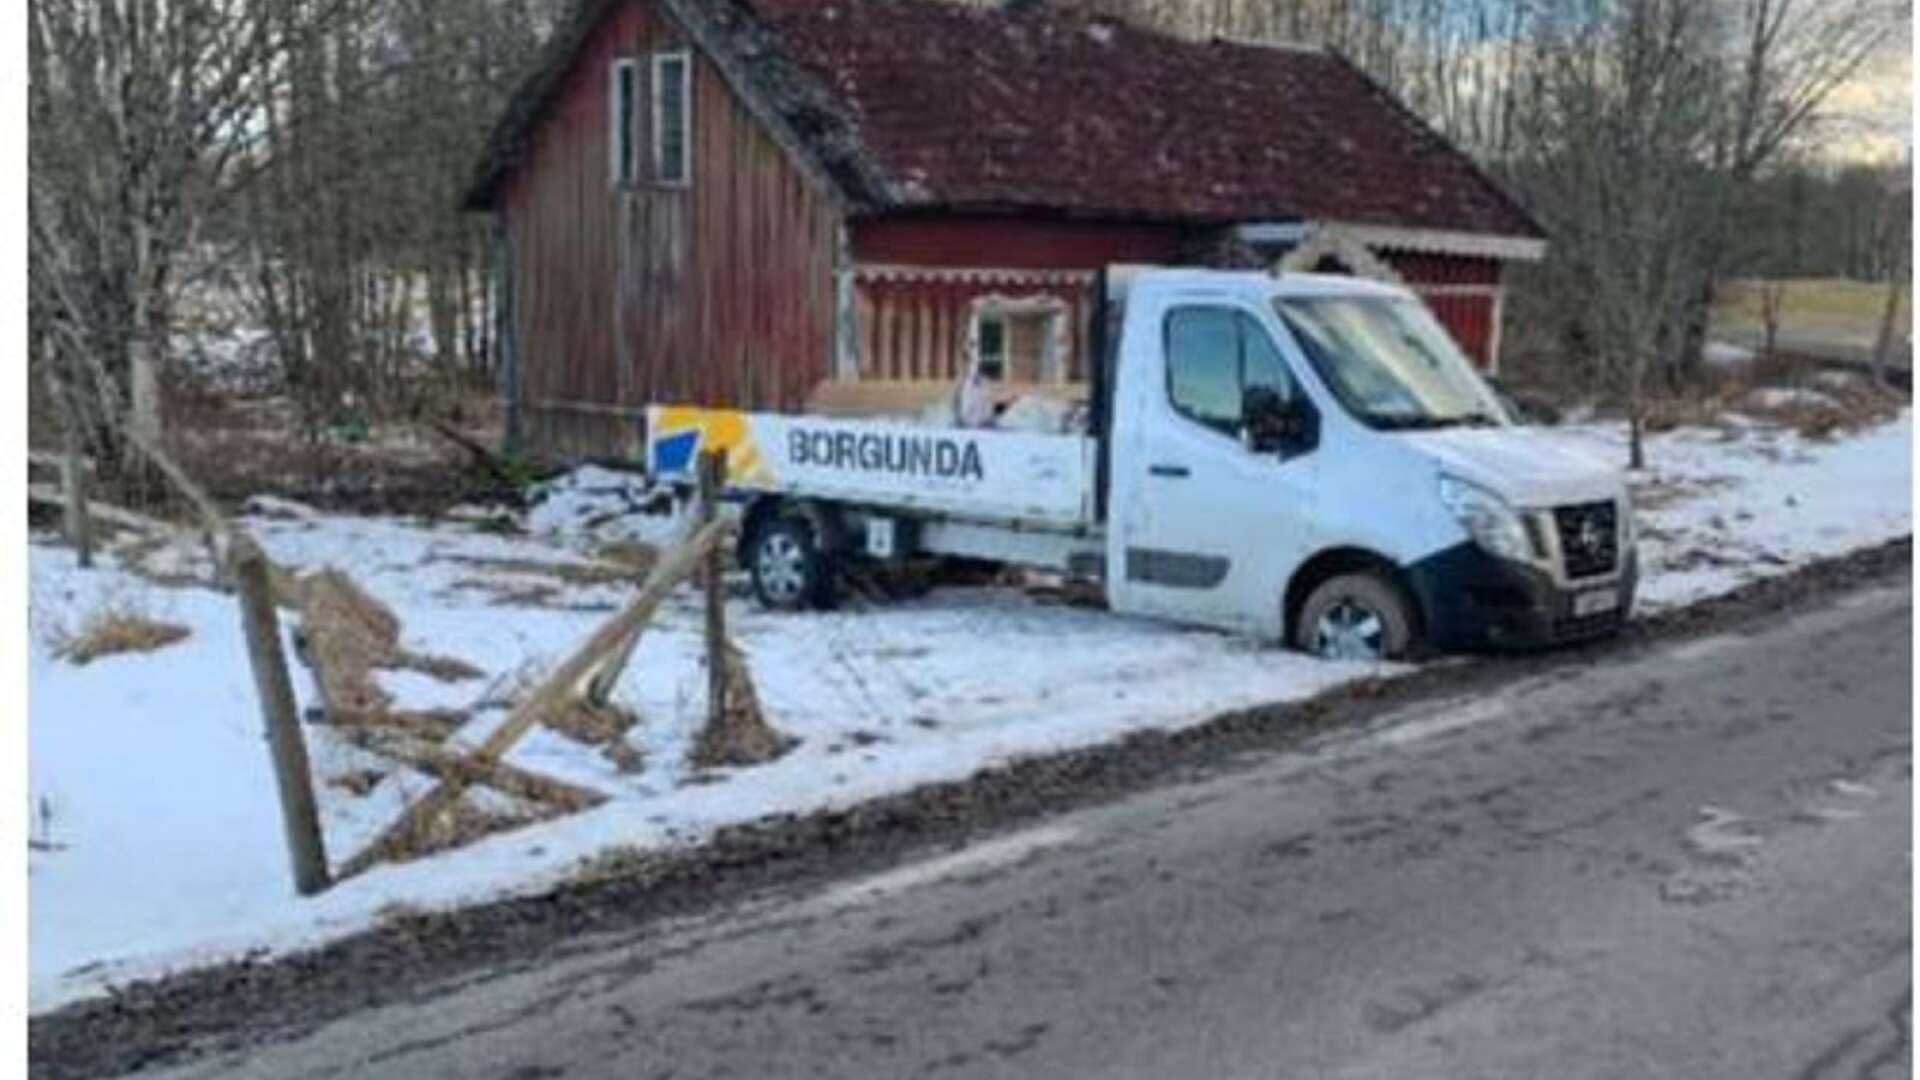 Återfunnen lastbil som stals vid Borgunda såg i mars. Den hittades dumpad i Falköping.